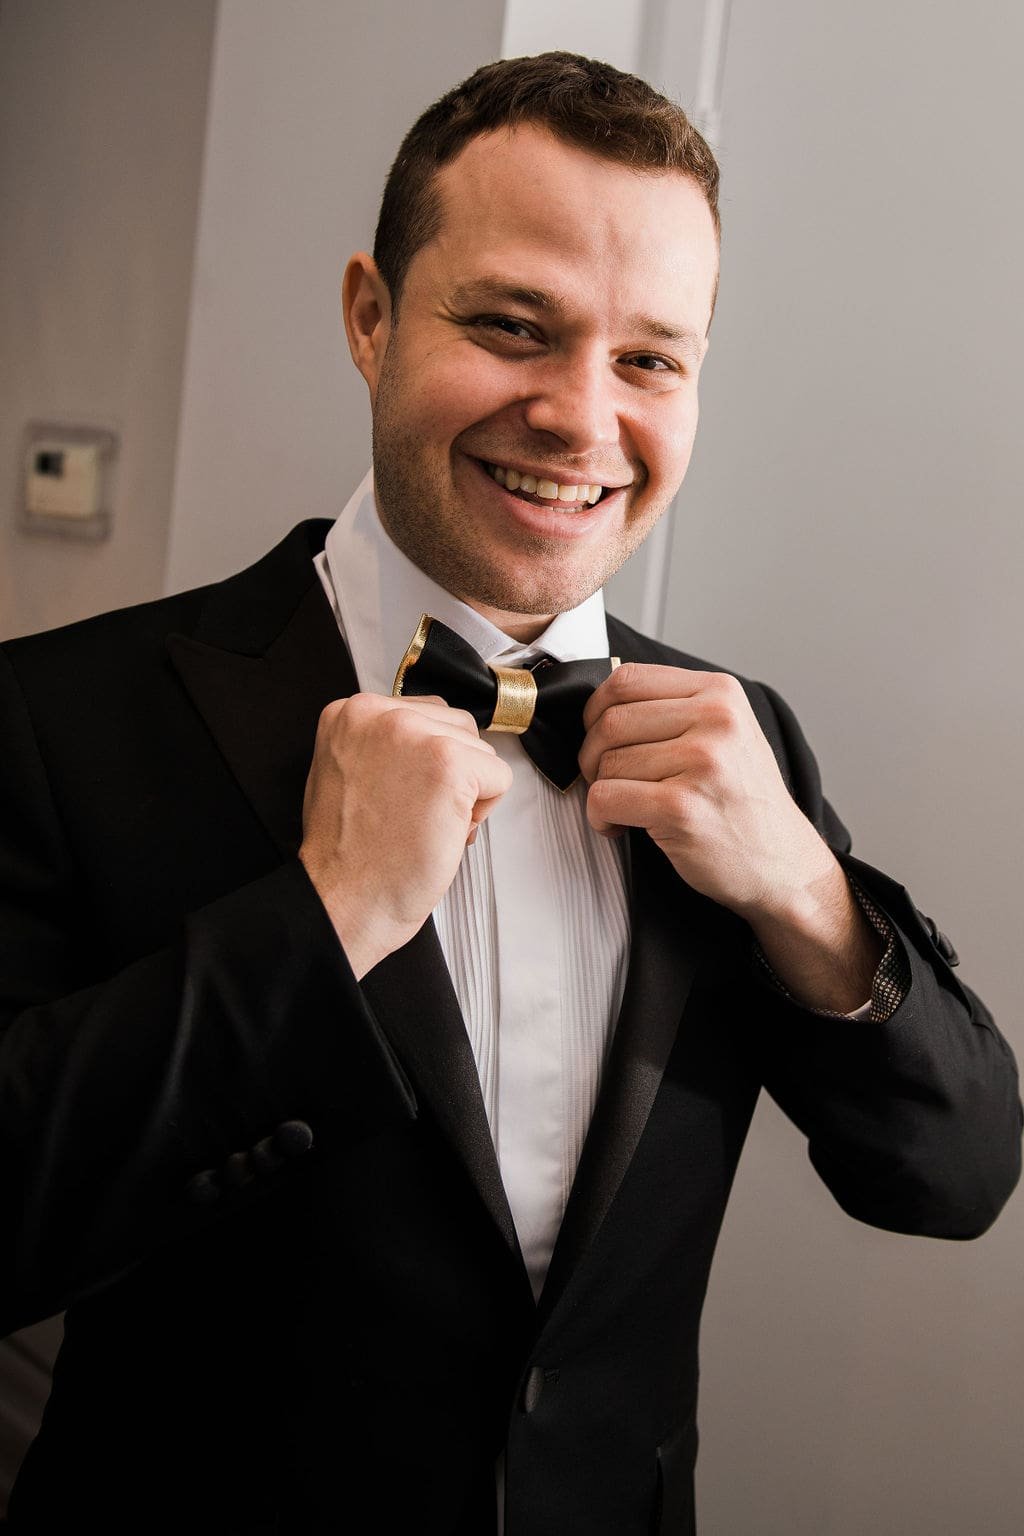 Toronto groom in black tuxedo with bowtie